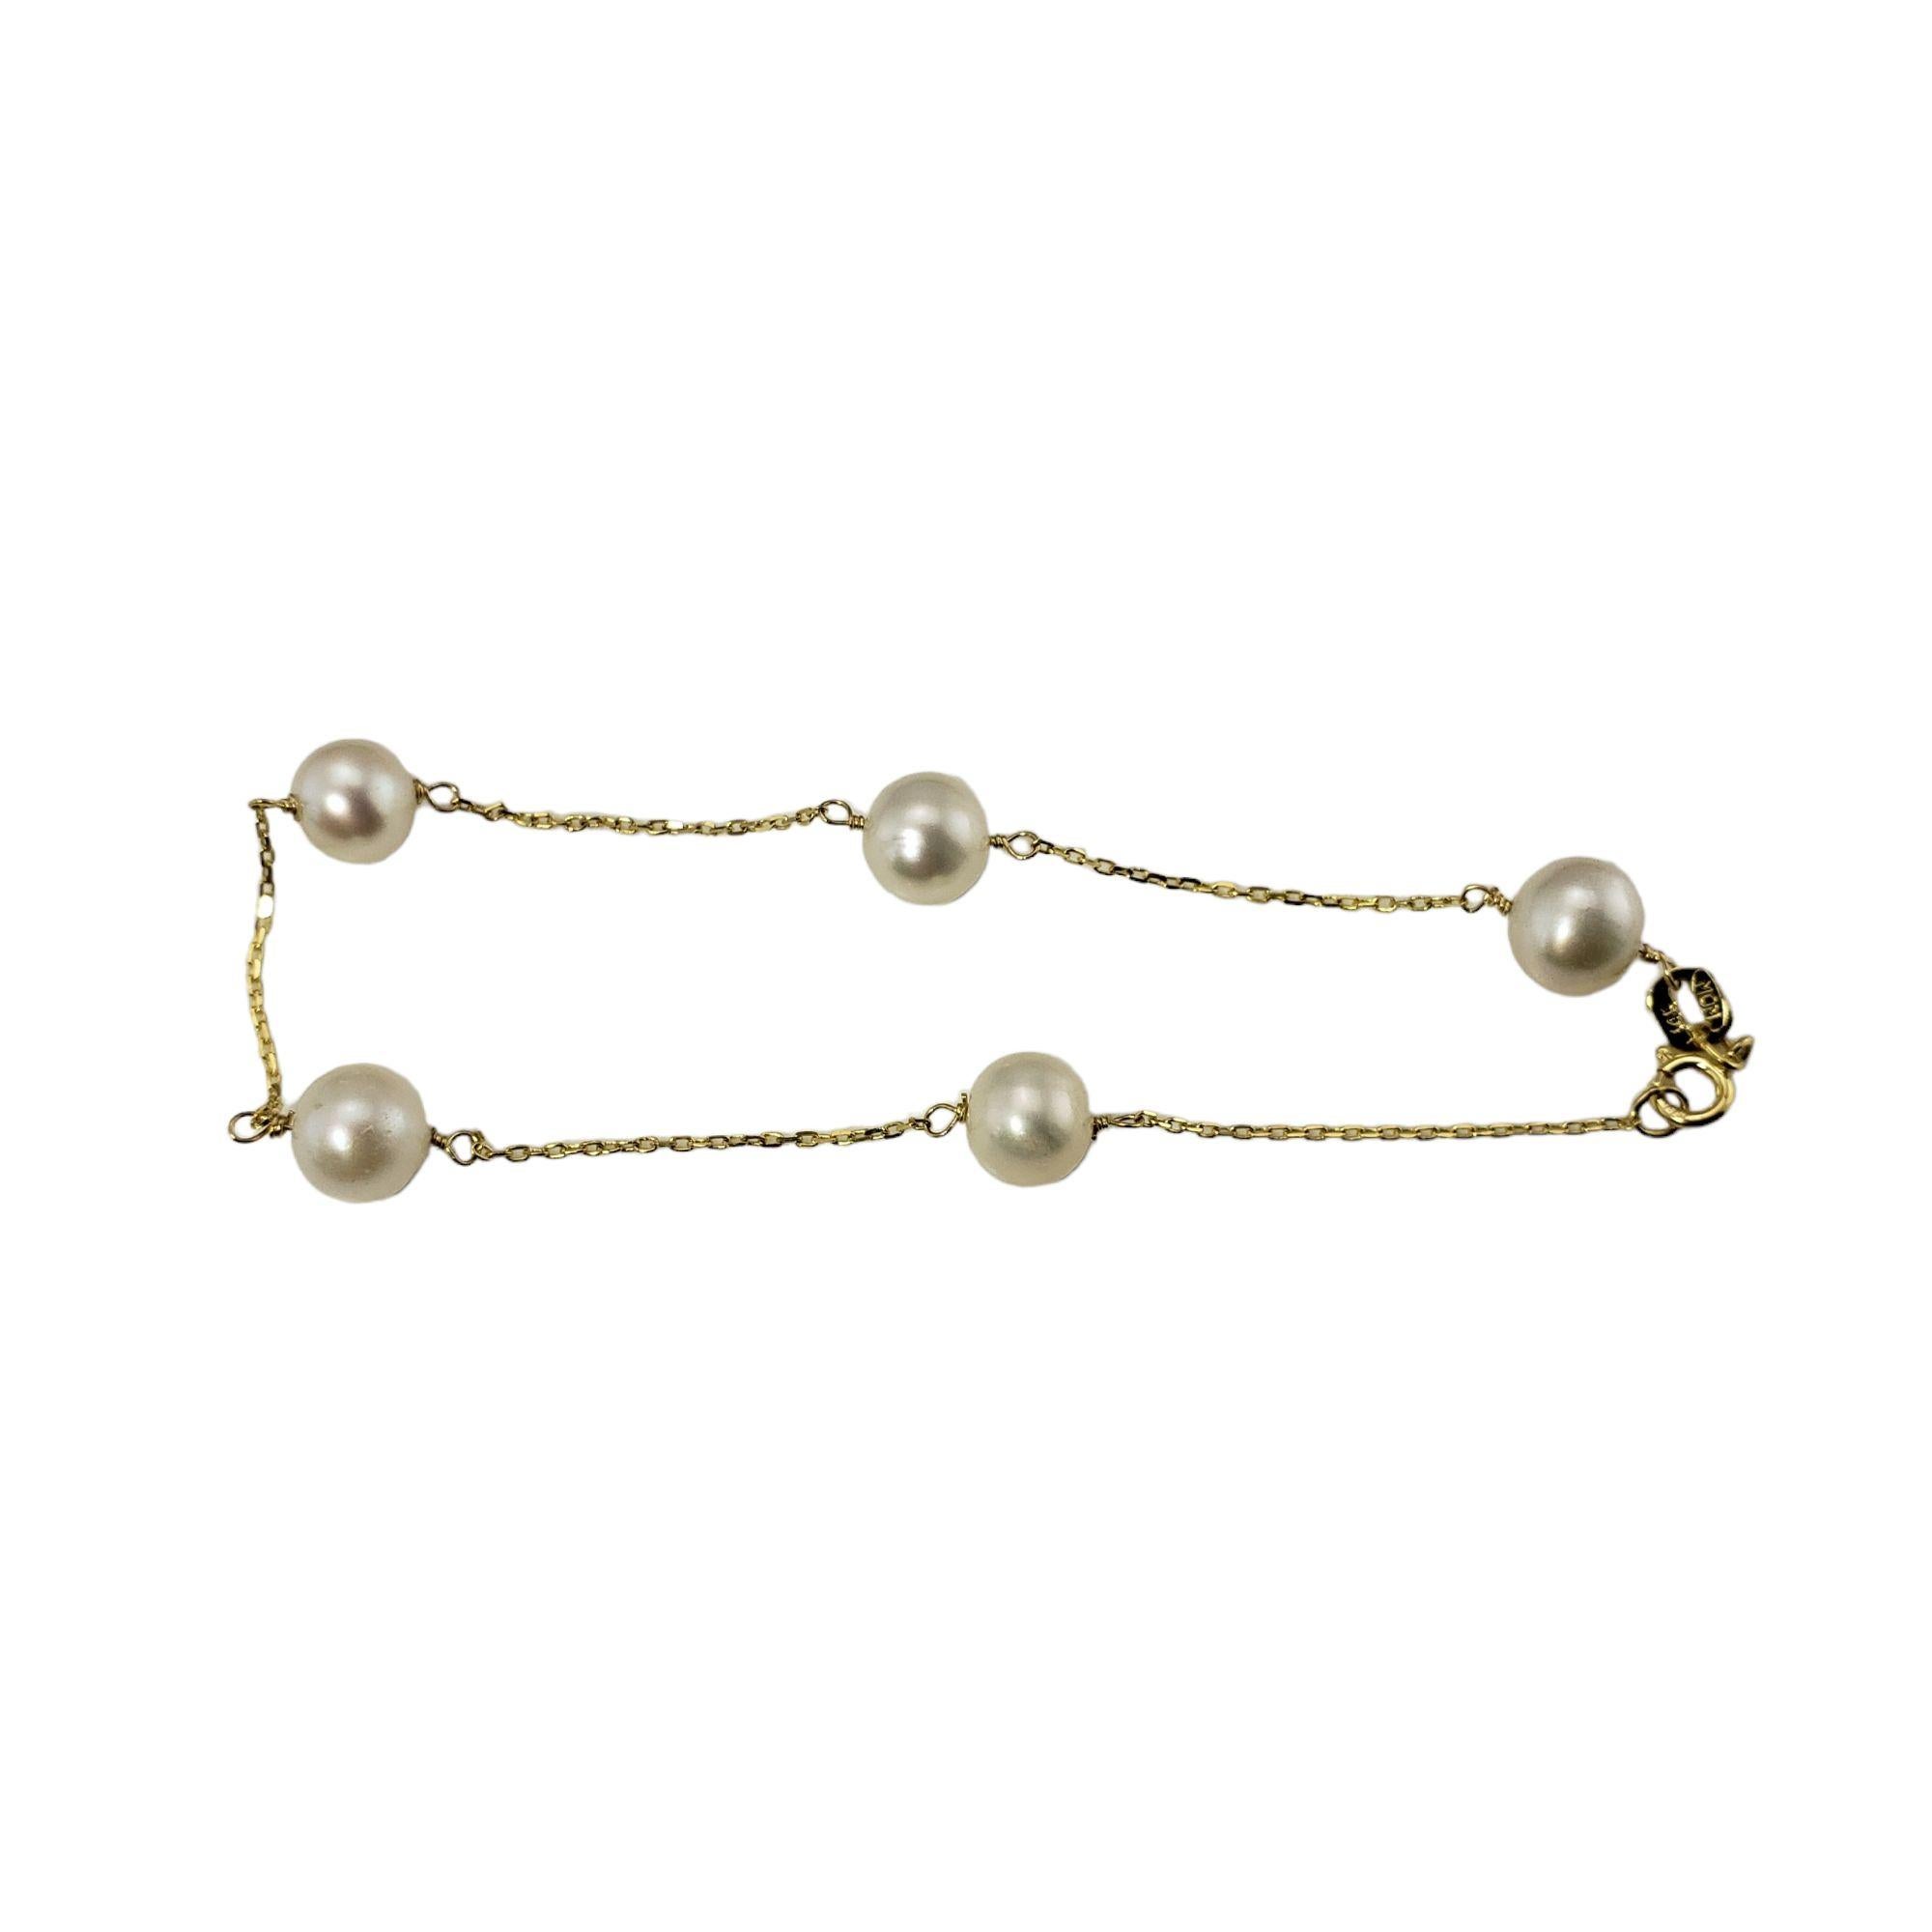 Dieses schöne Armband besteht aus fünf runden Perlen (je 6 mm), die an einer klassischen Kabelkette befestigt sind.

Größe: 6,5 Zoll

Gewicht:  1.3 dwt. /  2,1 gr.

Gestempelt: 14K

Sehr guter Zustand, professionell poliert.

Wird in einem